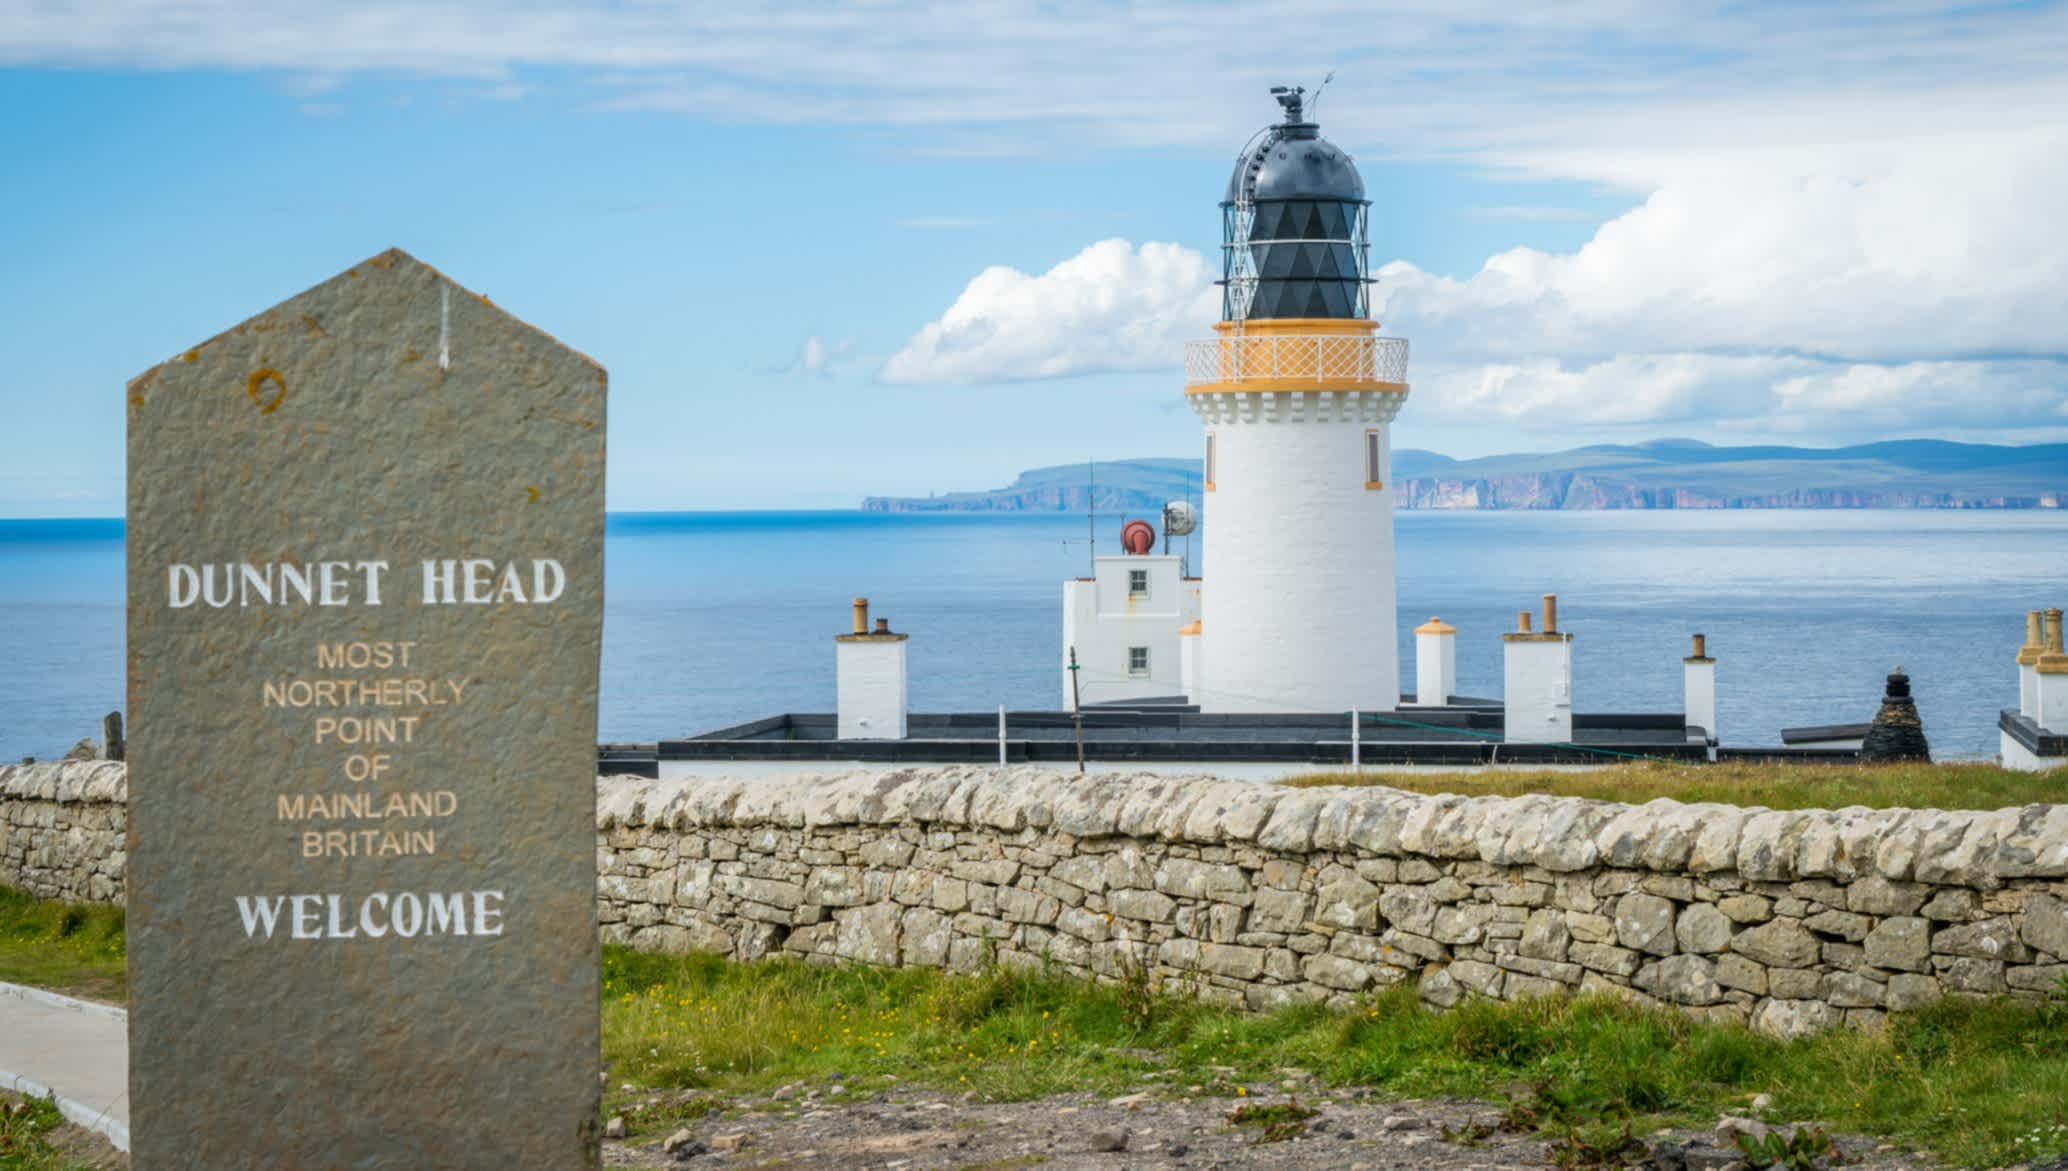 Vue du phare de Dunnet Head à Caithness, au nord de l'Écosse, le point le plus au nord de l'Écosse continentale avec la mer en arrière plan